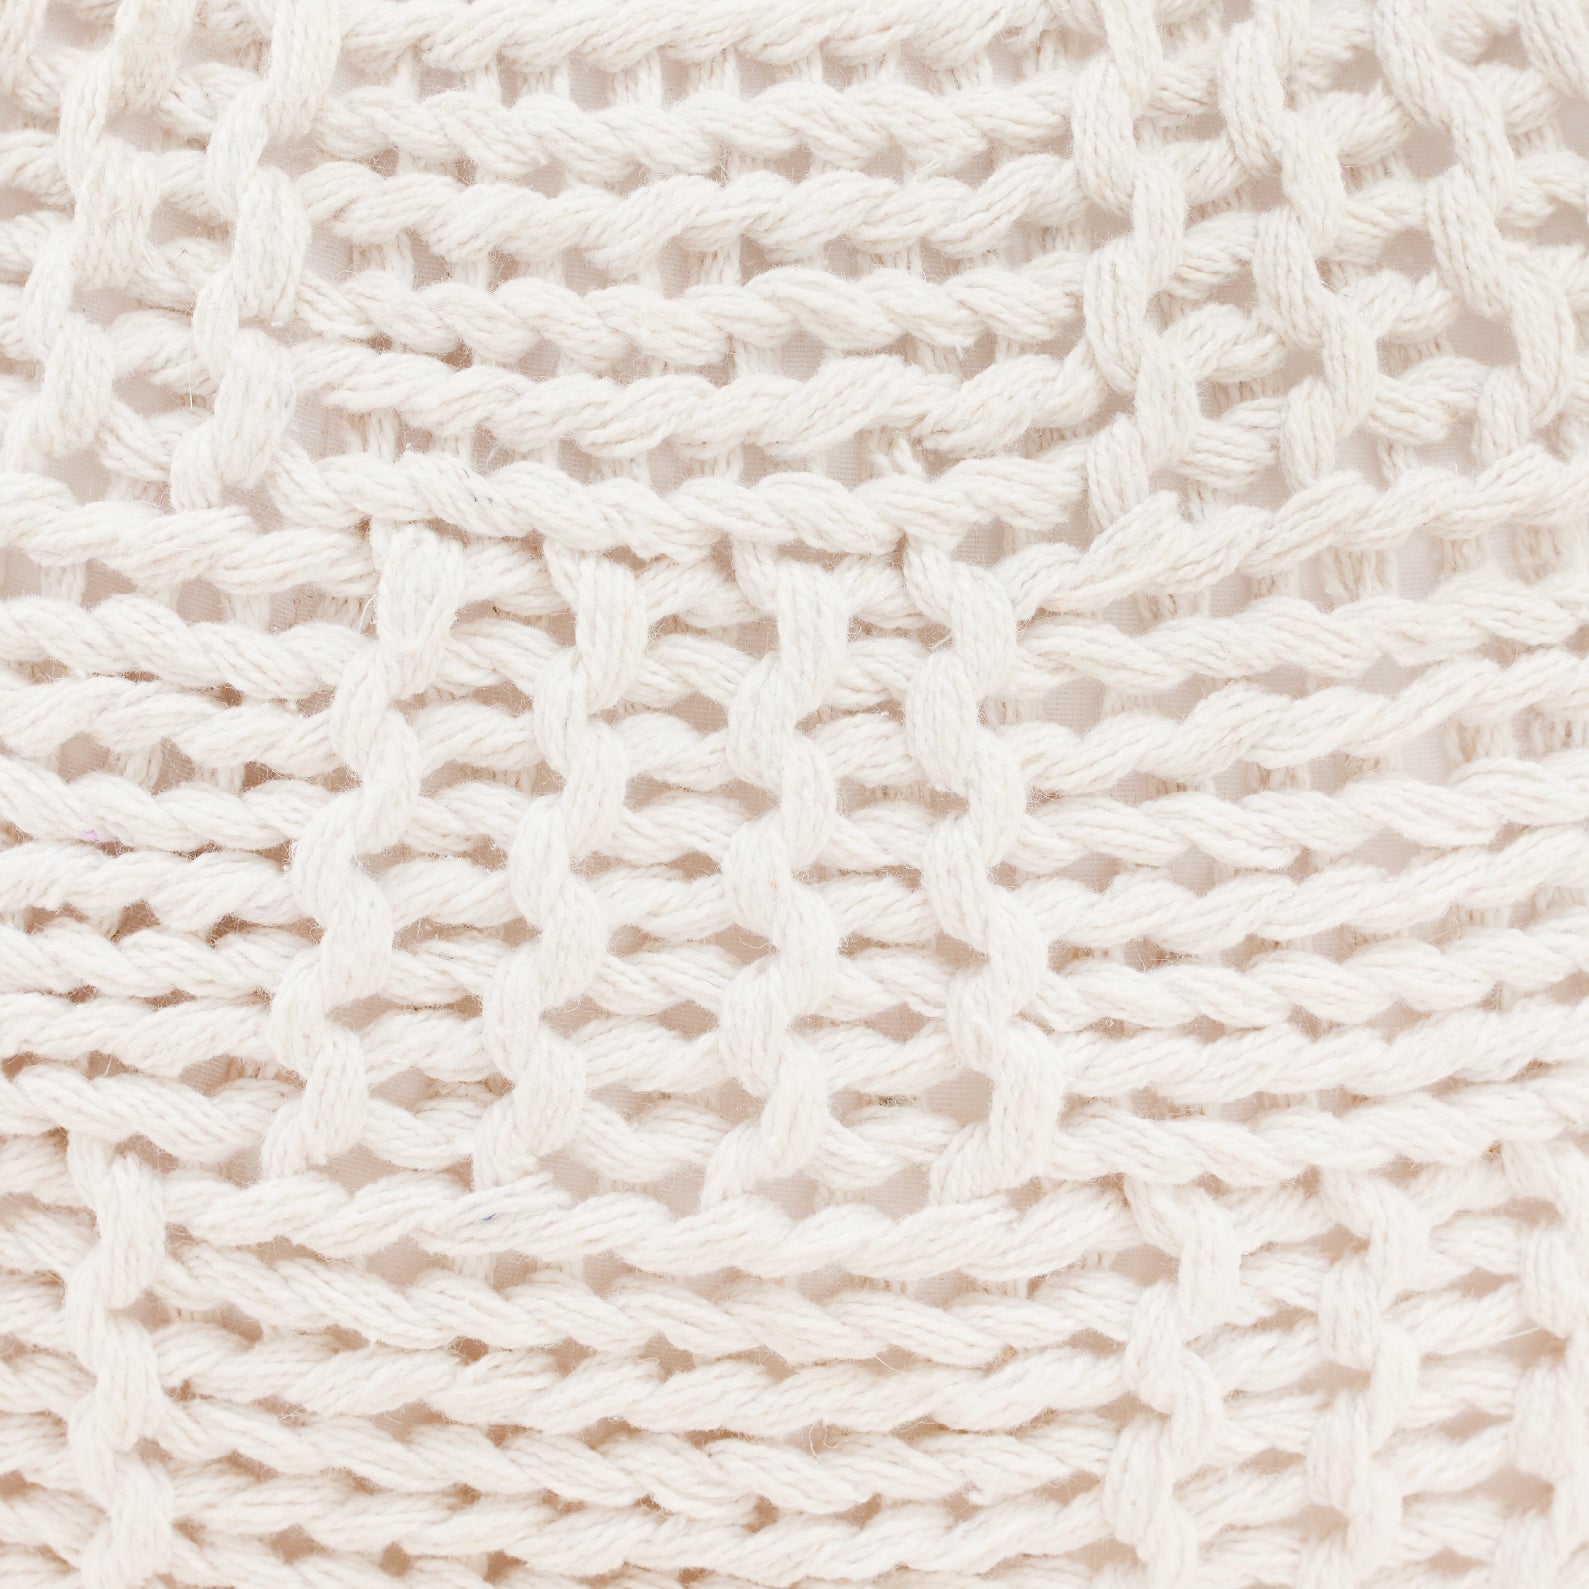 White Hand-Knitted Pouf | เก้าอี้สตูล ทอมือ